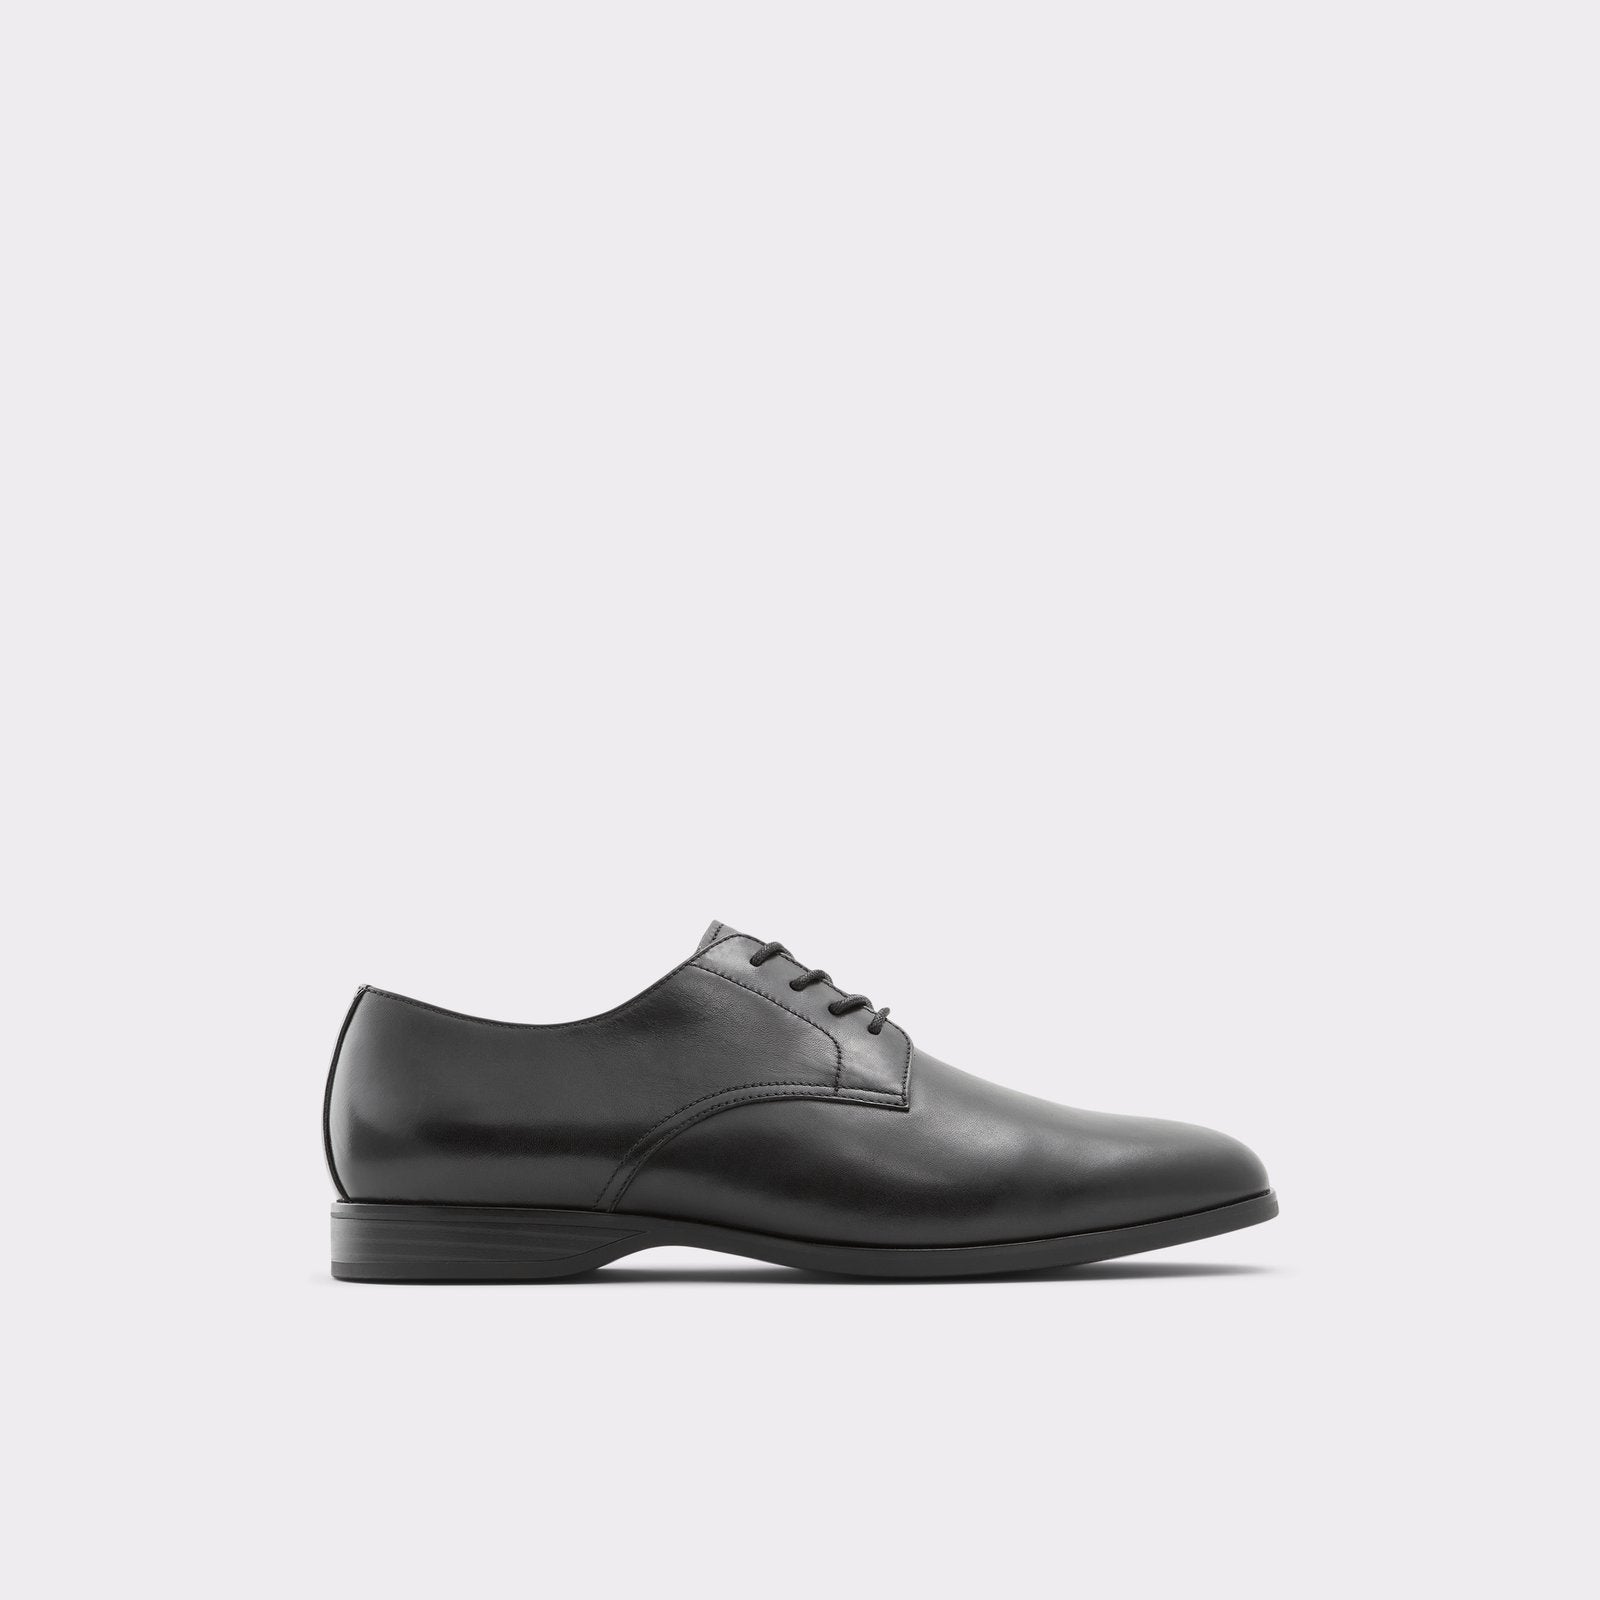 Tolkien Men Shoes - Black - ALDO KSA